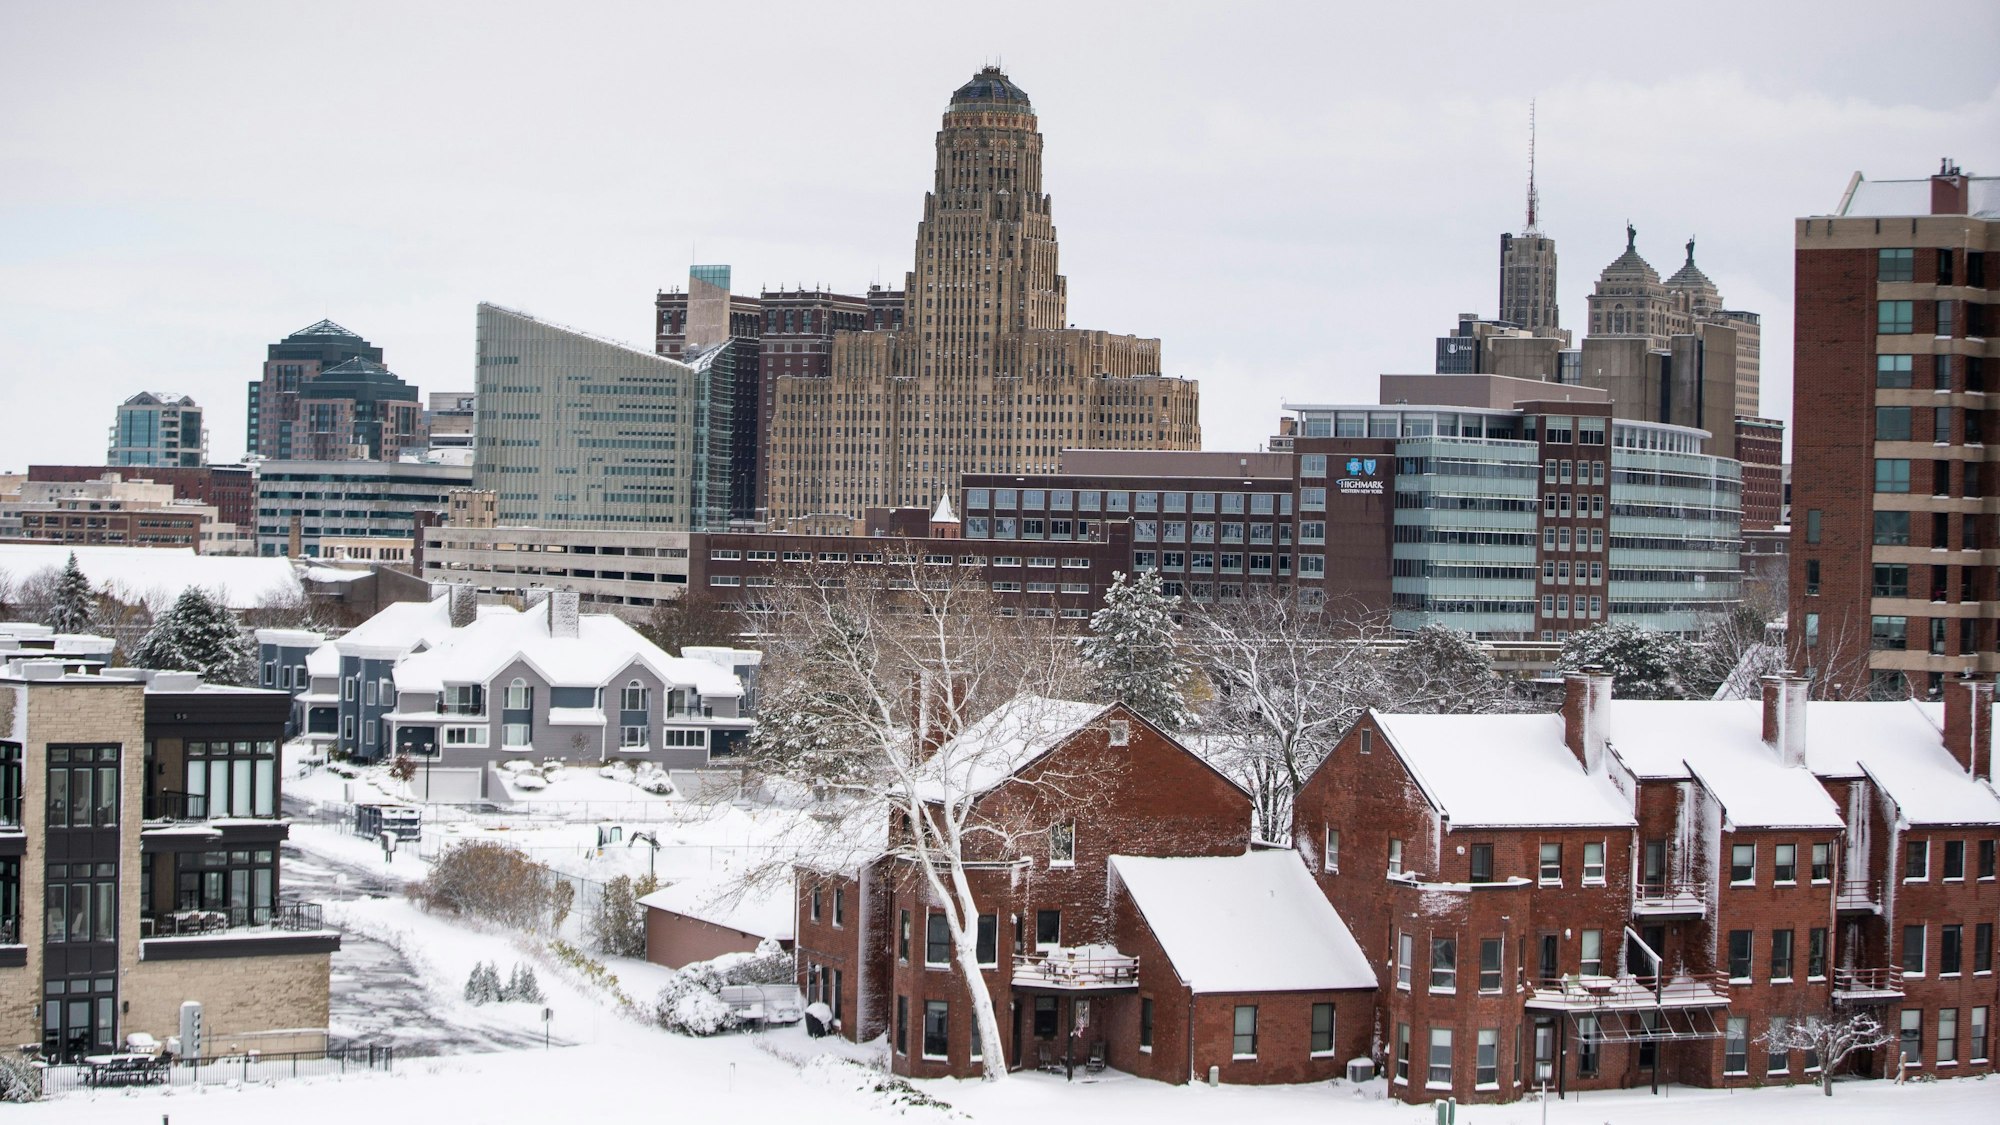 Blick auf die Stadt Buffalo, New York, nach den heftigen Schneefällen. Die Straßen und Dächer sind mit Schnee bedeckt.